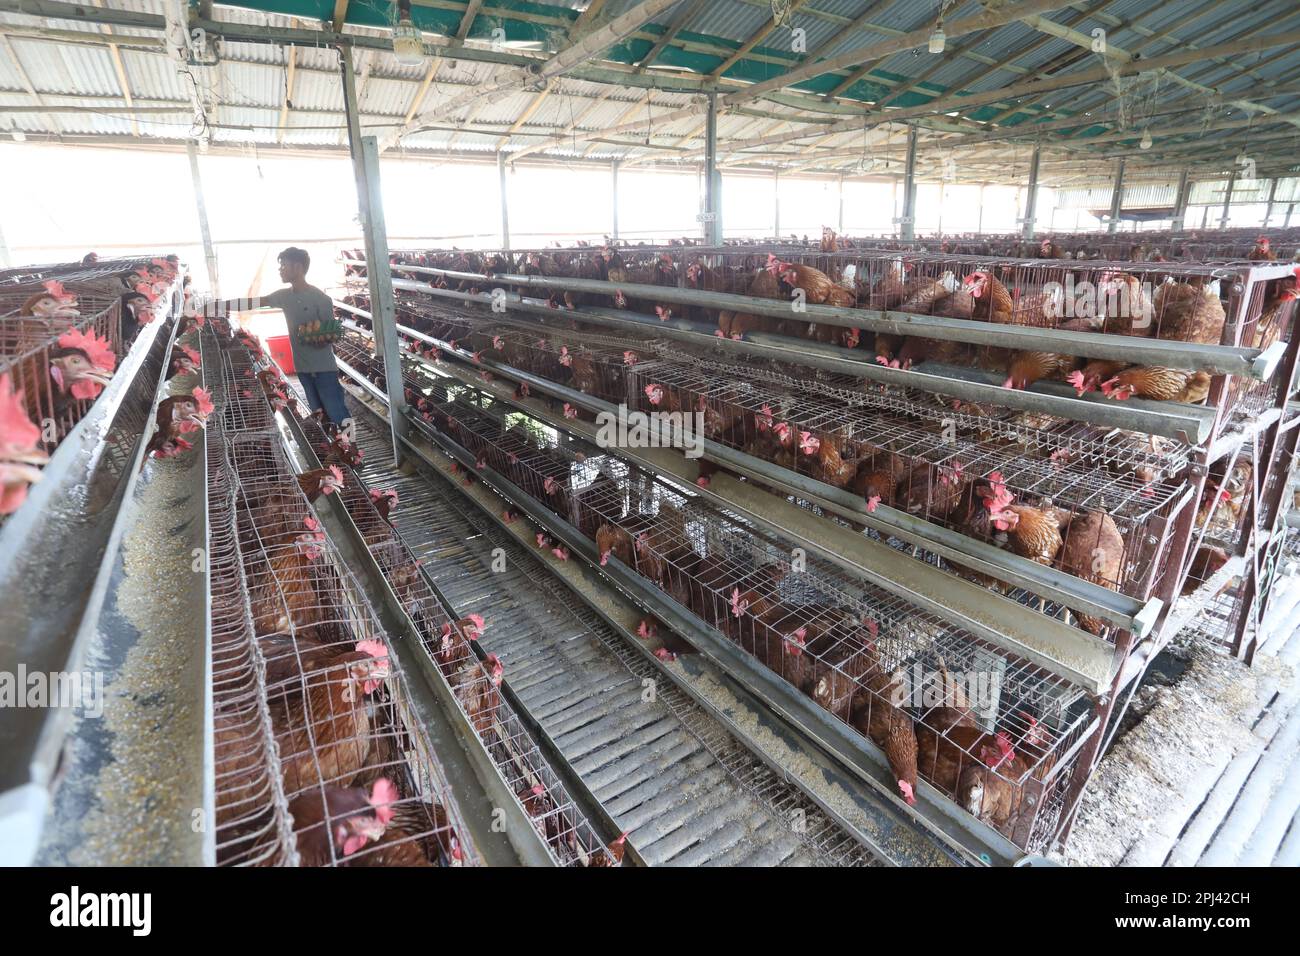 Geflügelfarm in Savar, Bangladesch. Unter allen Teilsektoren des Viehsektors in Bangladesch zählt Geflügel zu den wichtigsten. Stockfoto